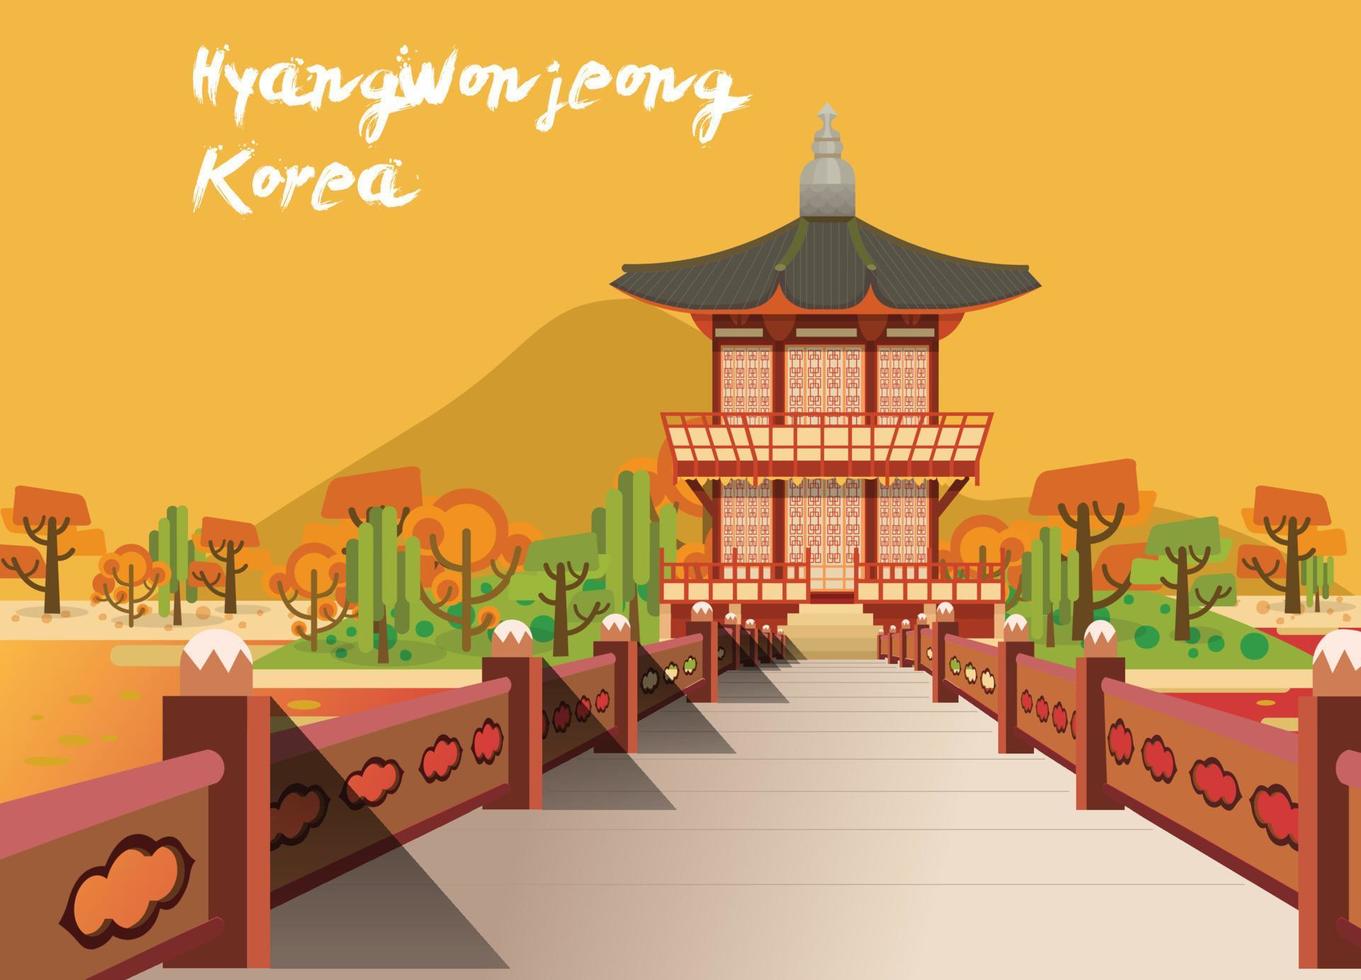 ilustração vetorial do pavilhão da coreia de hyangwonjeong vetor